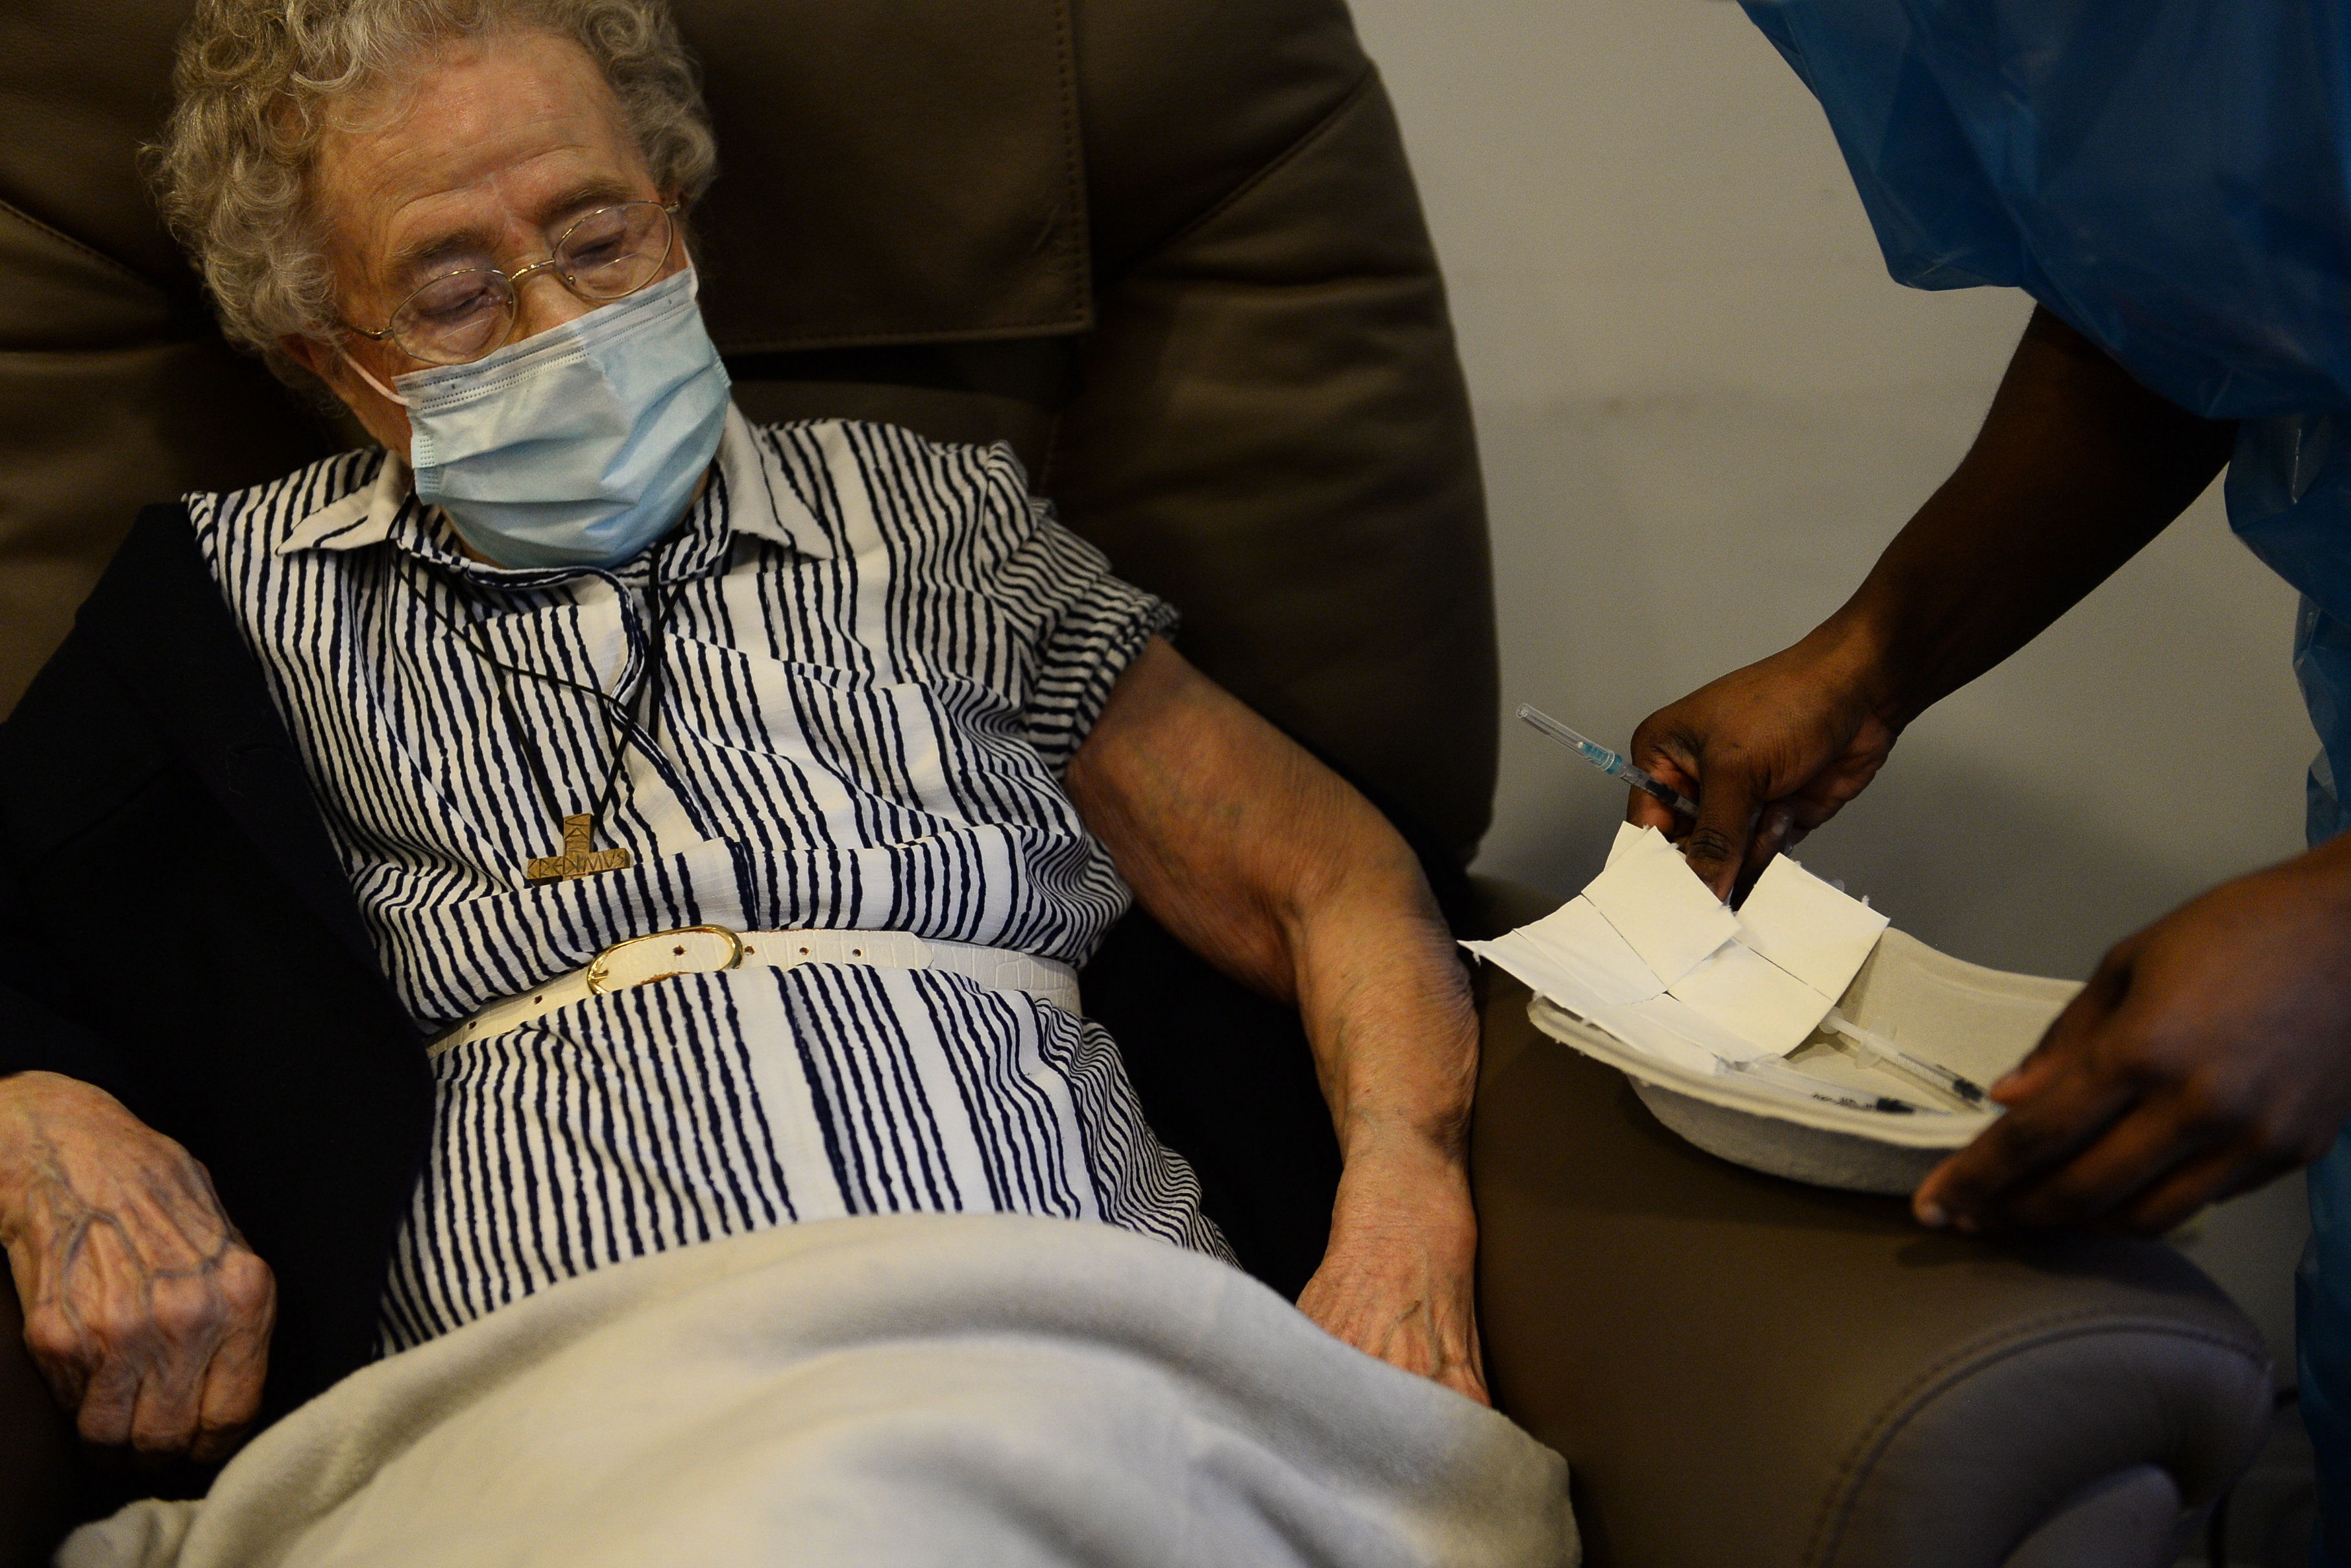 Lucie Danjou, belga de 101 años, recibe una dosis de la vacuna Covid-19 de Pfizer/BioNtech, mientras continúa el brote de la enfermedad en Bruselas (Bélgica), el 28 de diciembre de 2020. (Foto Prensa Libre: EFE)